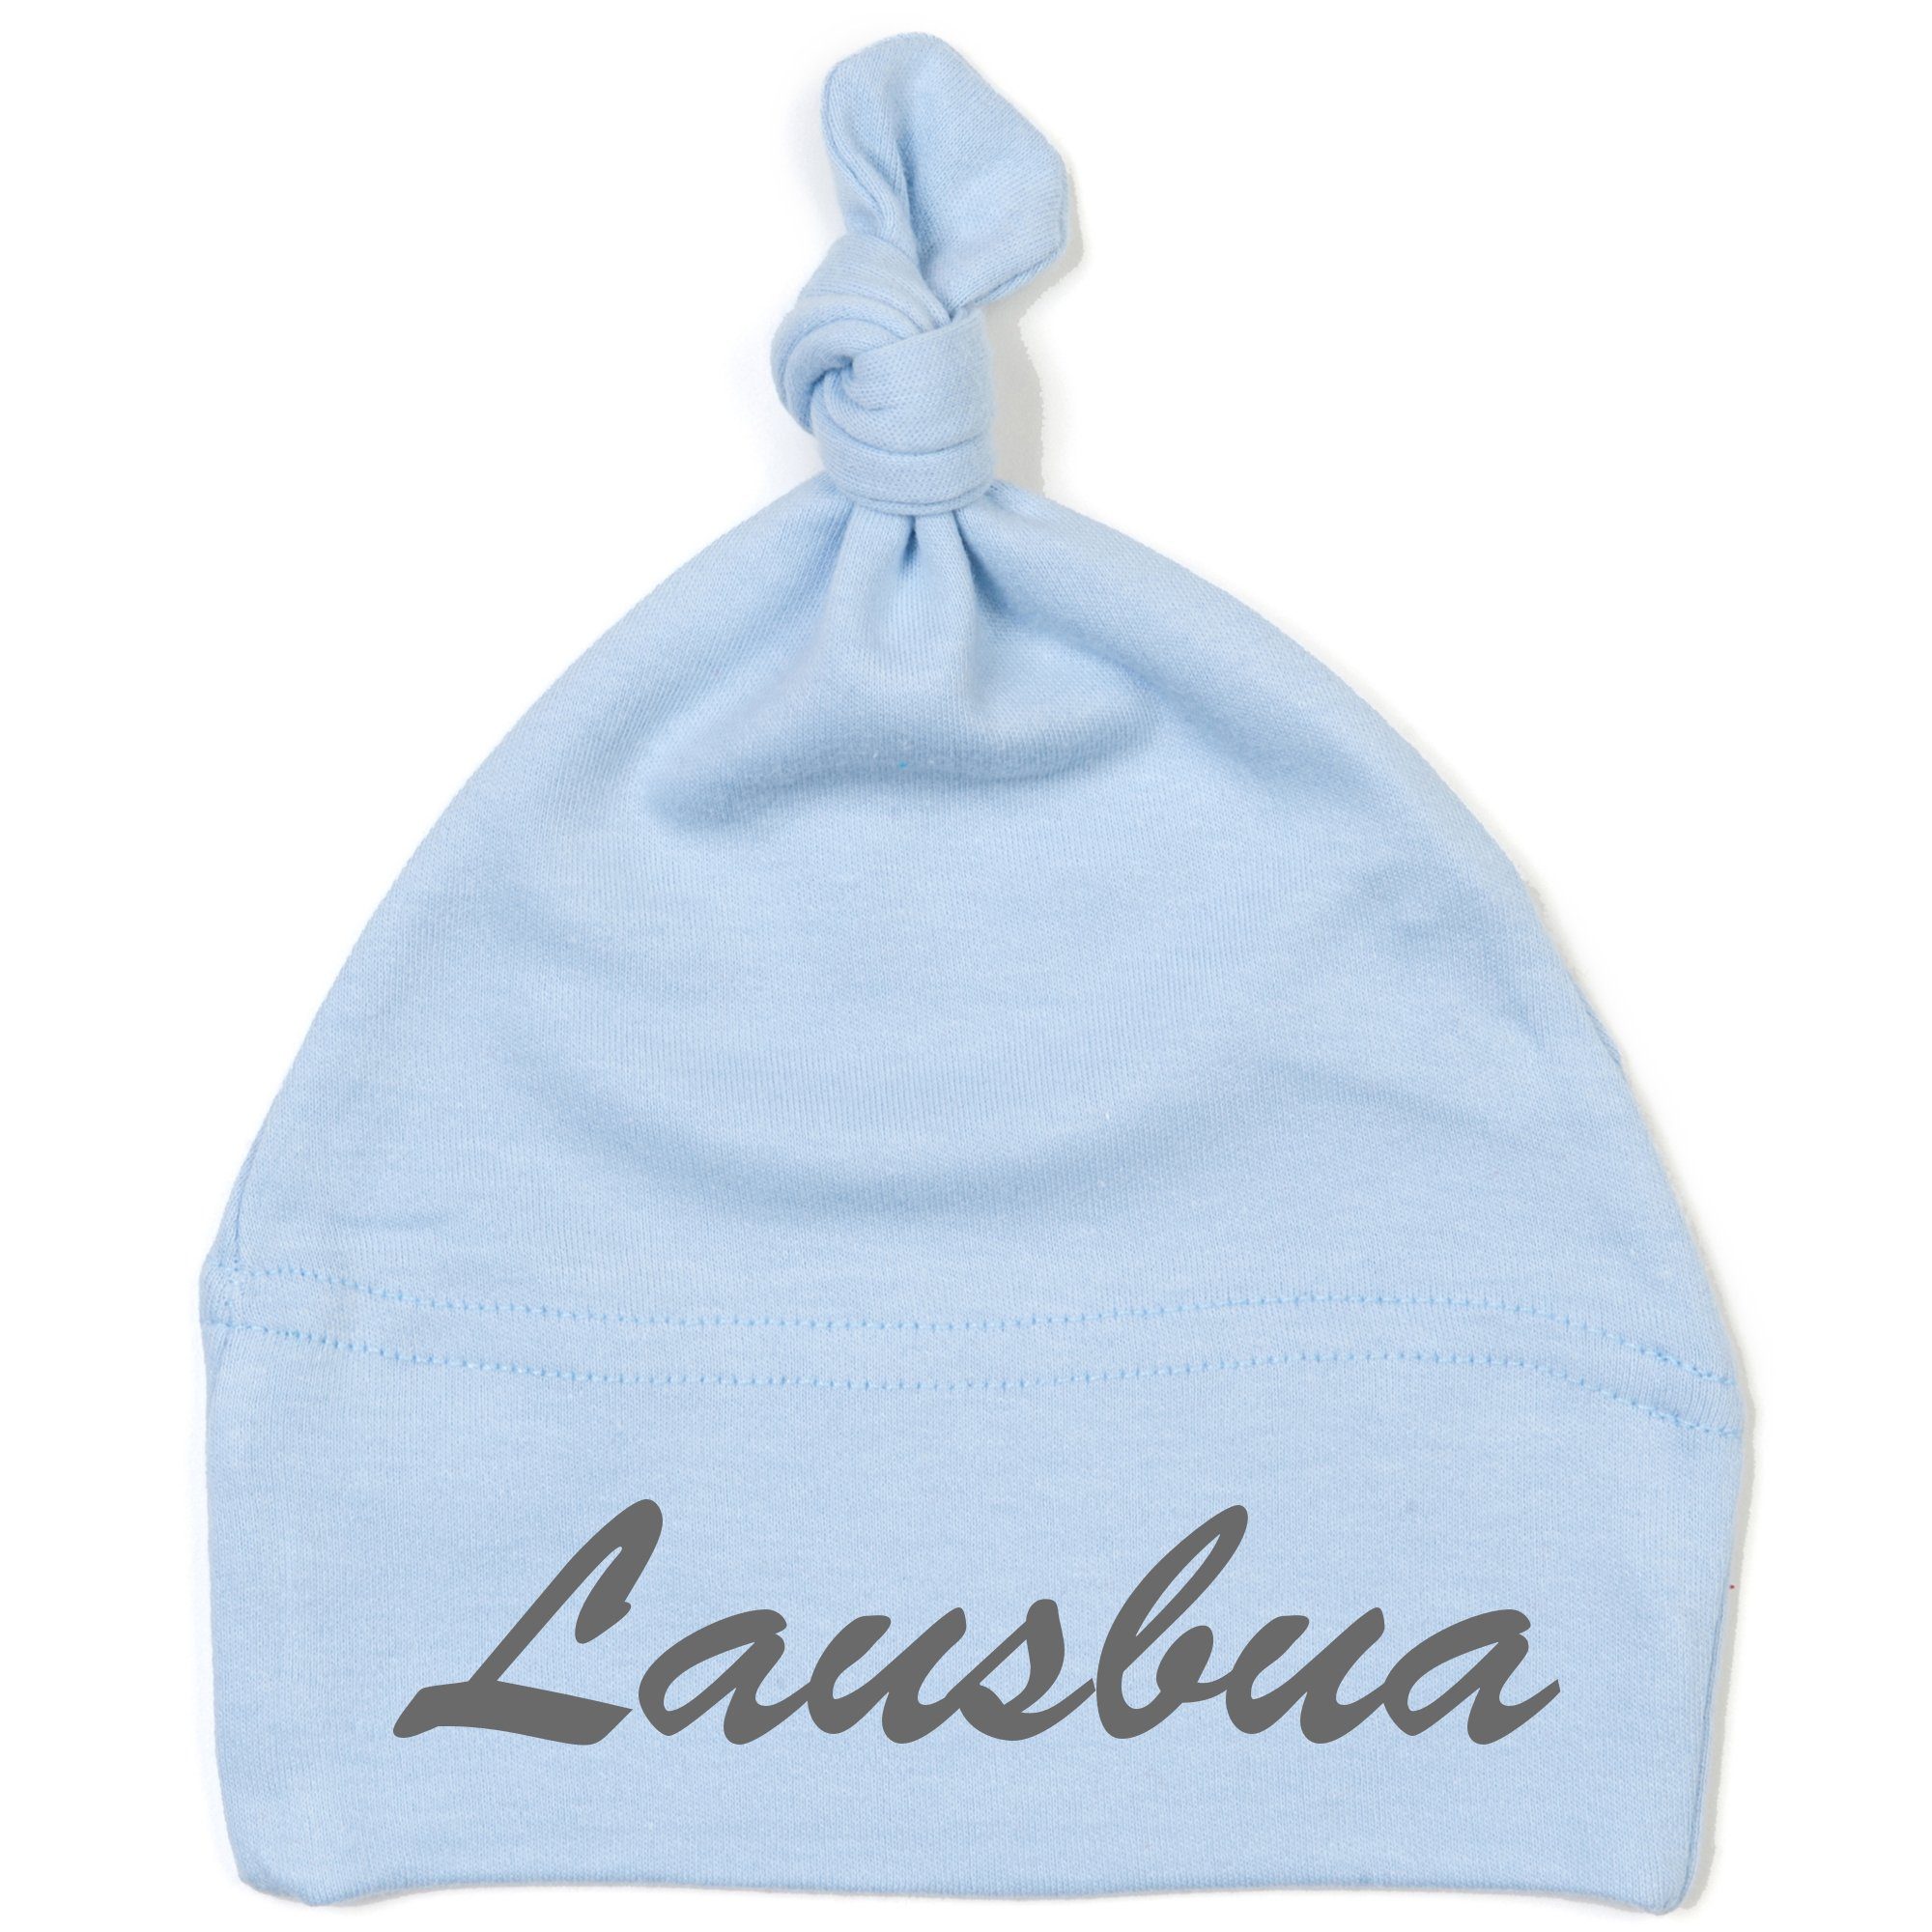 Schnoschi Erstlingsmütze Babymütze mit Knoten und mit Lausbua hochwertig  bestickt / gestickt Stickerei mit Lausbua